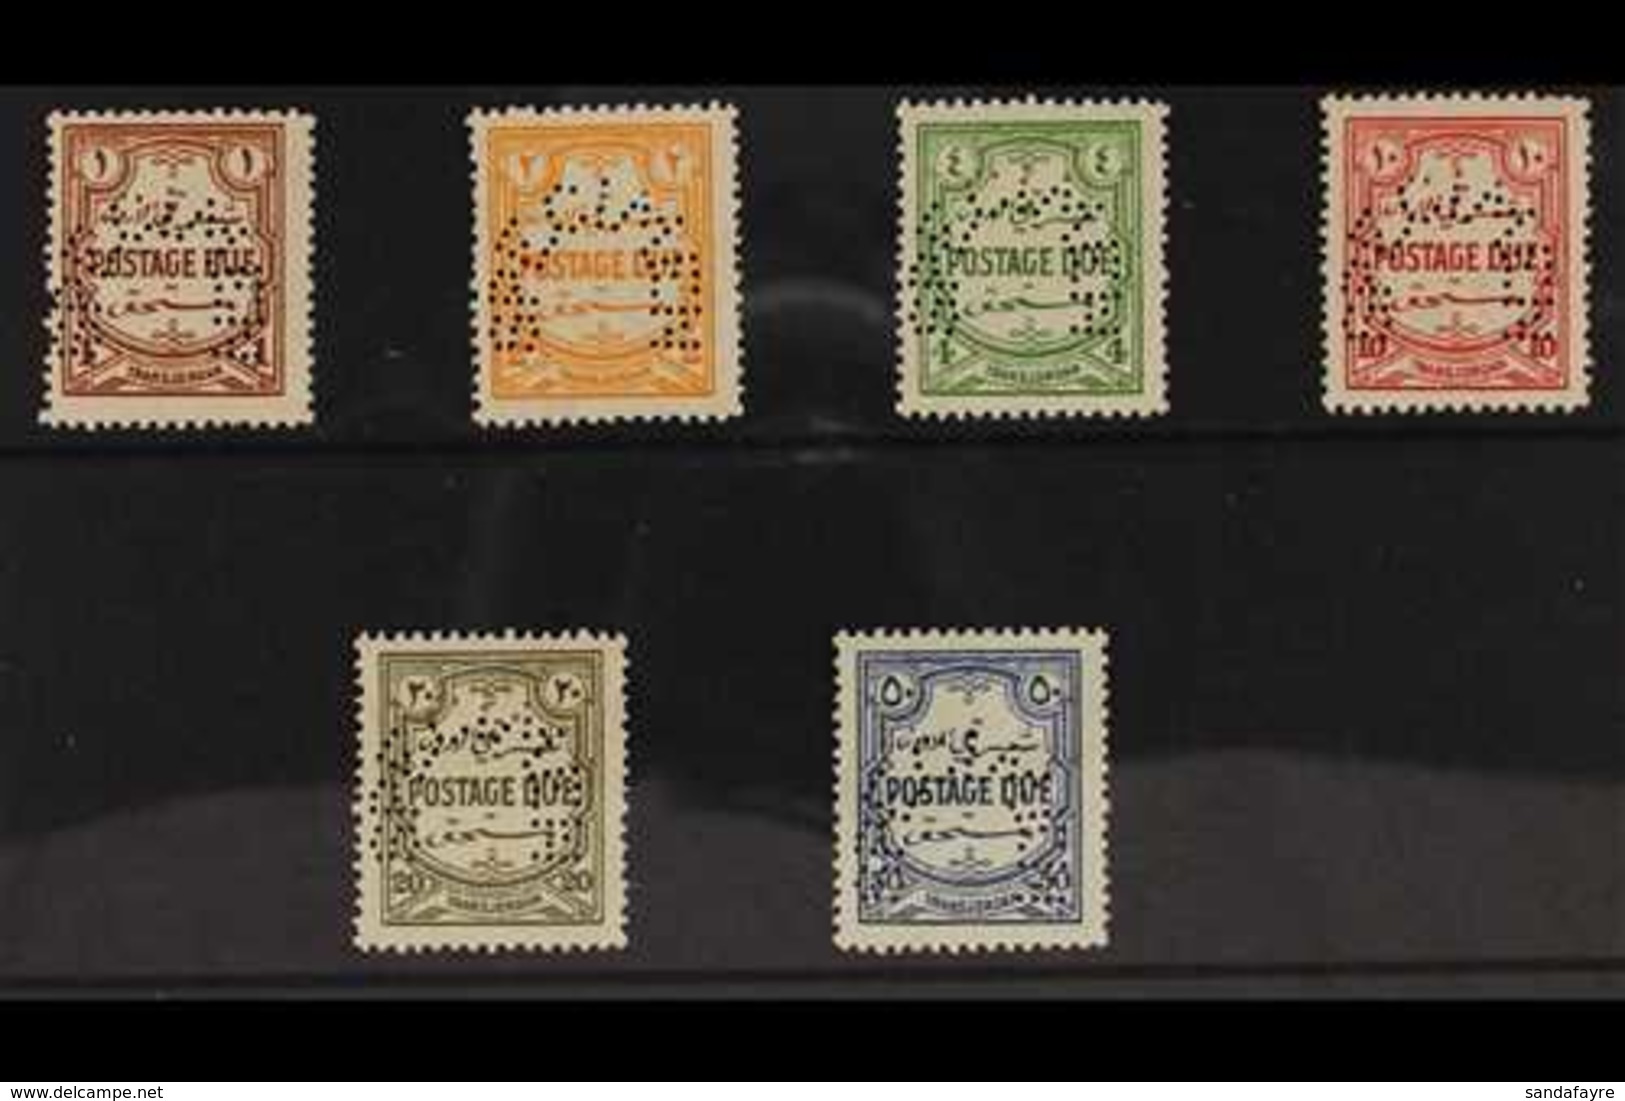 POSTAGE DUE 1929 Complete Set Perf "SPECIMEN", SG D189s/94s, Fine Mint. (6 Stamps) For More Images, Please Visit Http:// - Jordanië